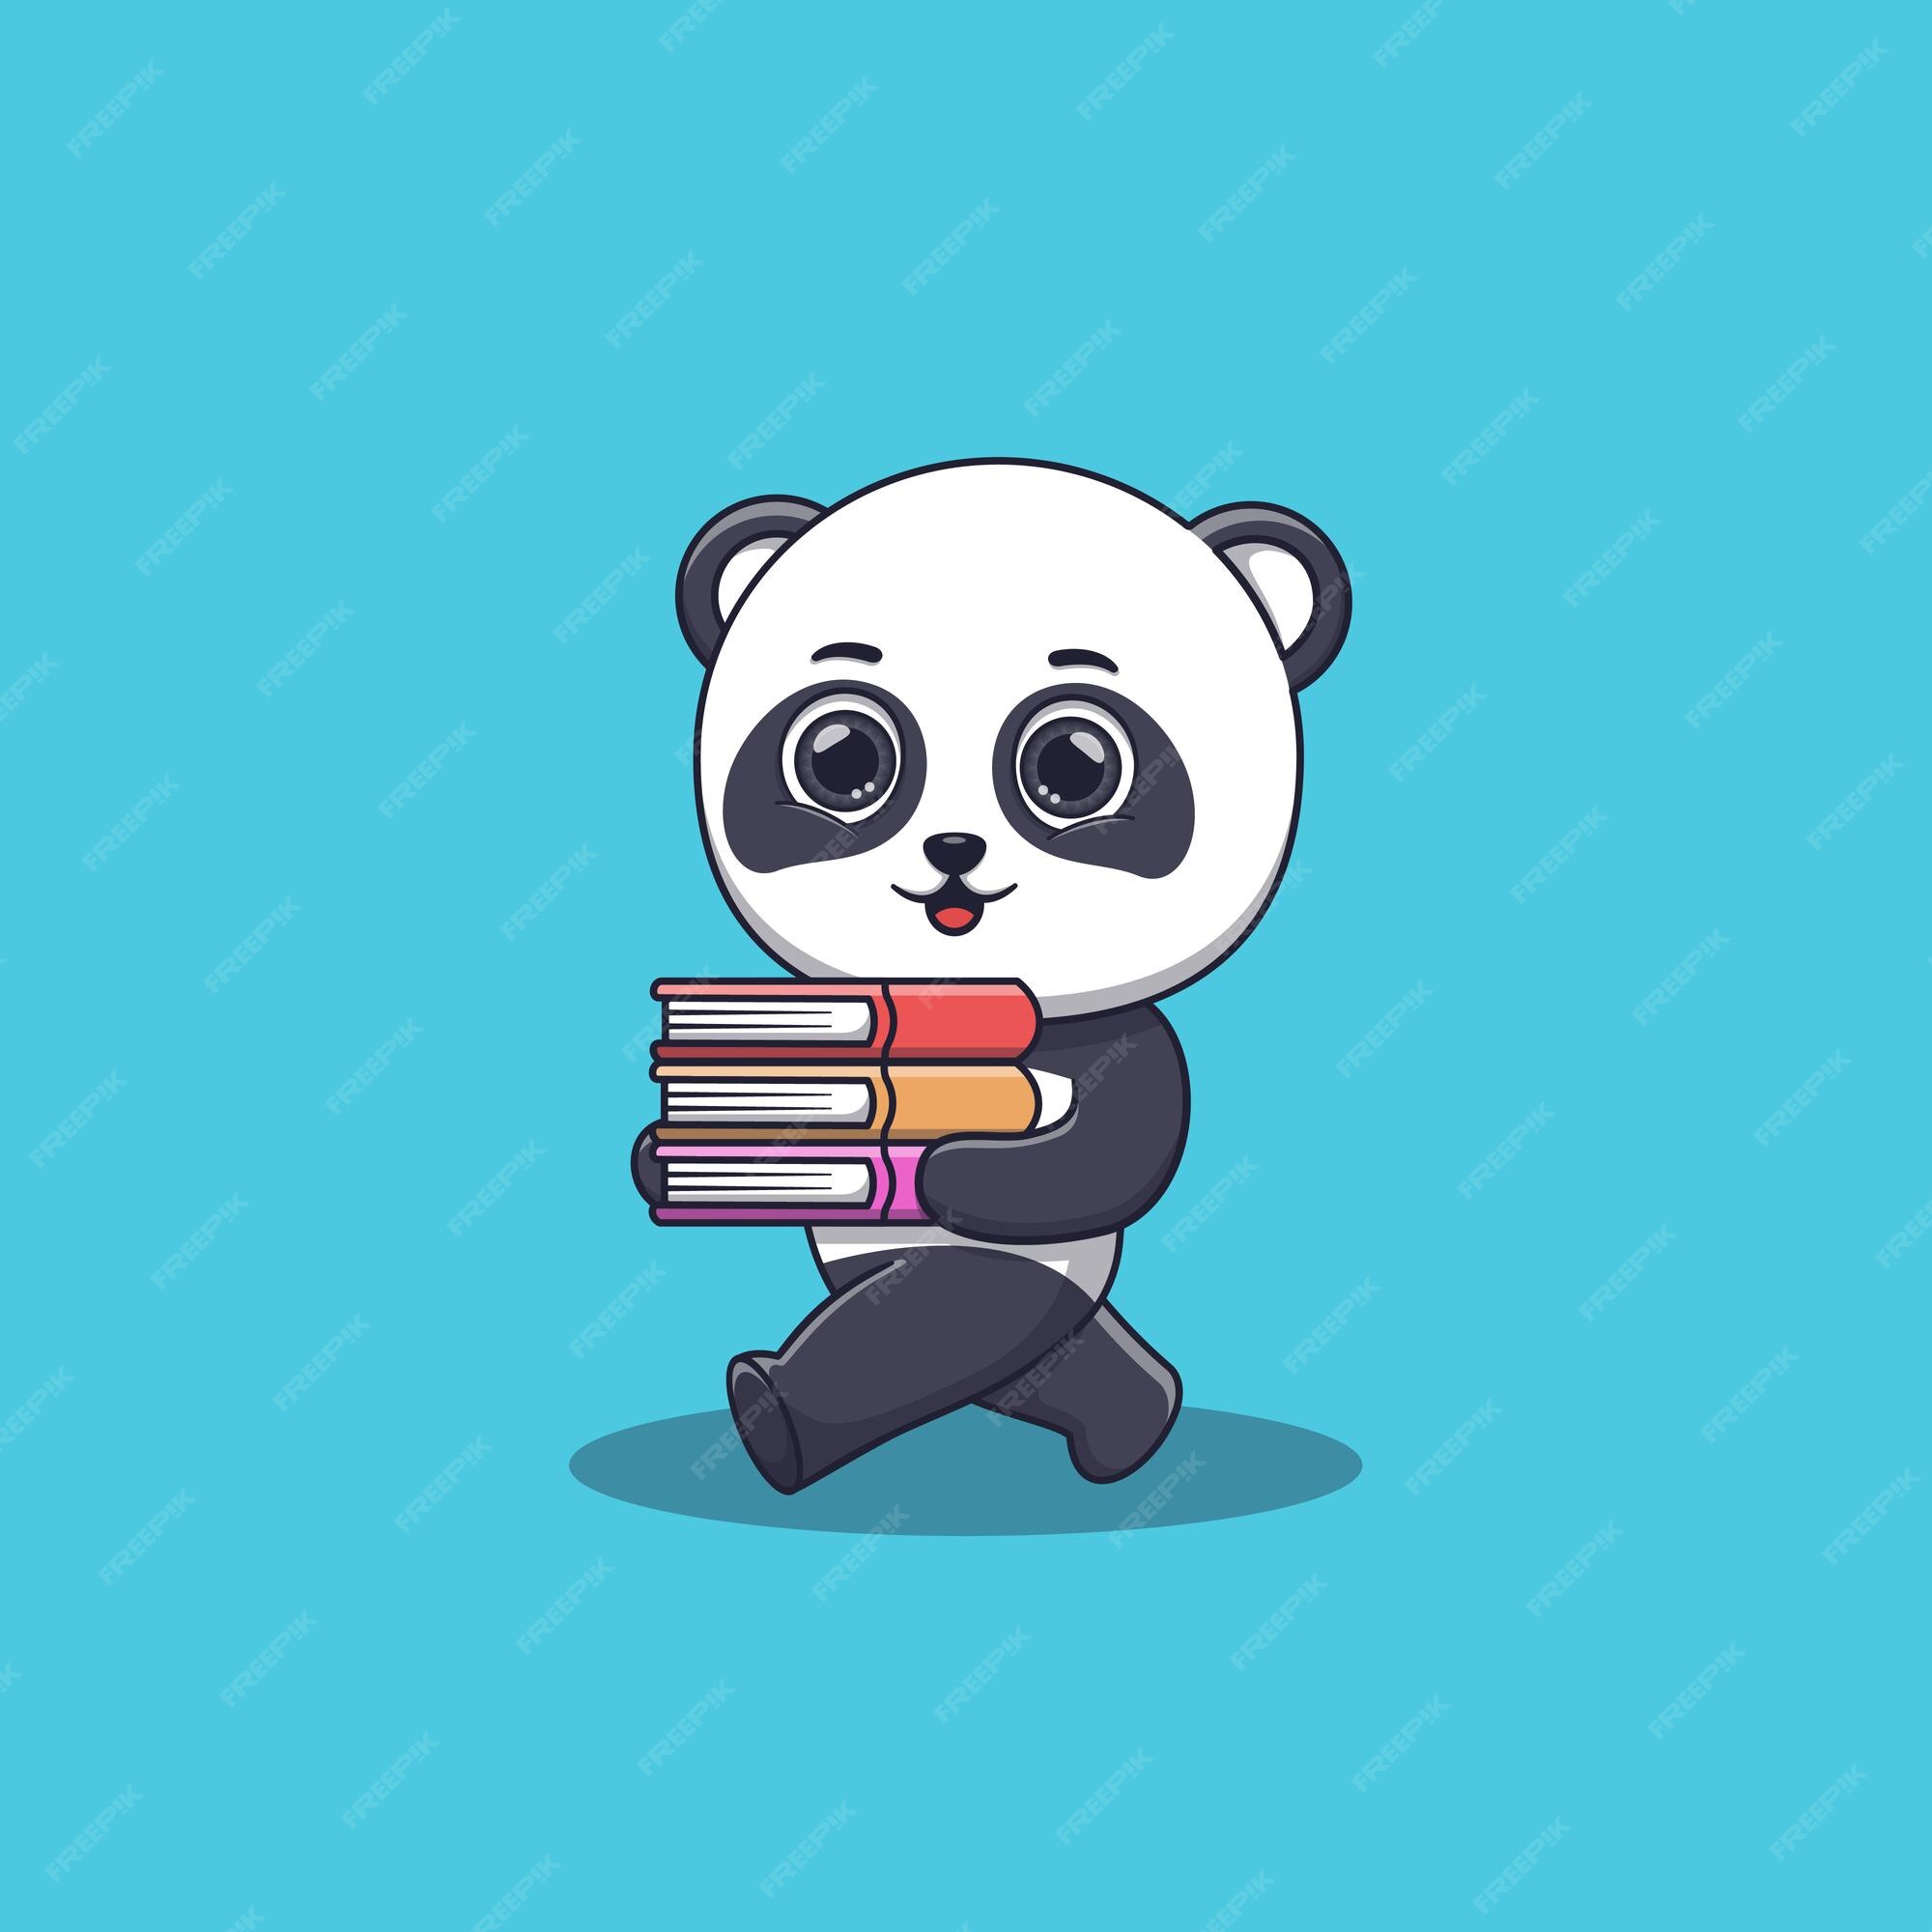 Premium Vector | Cute panda walking and bring some books